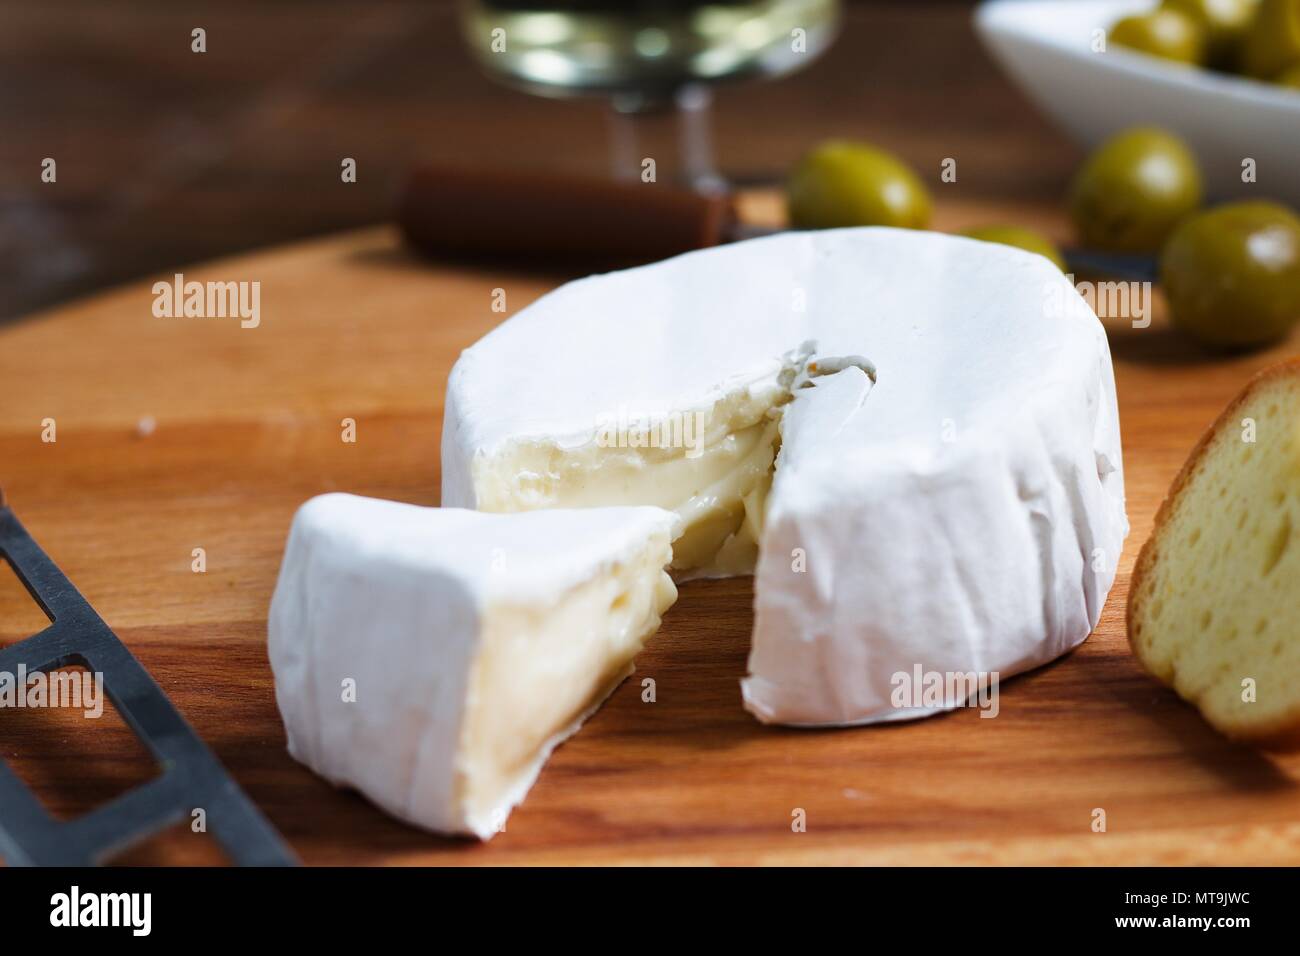 Gros plan de la roue de coupe de fromage à croûte tendre blanc (camembert ou brie) avec petit morceau coupé pour montrer la texture magnifique Banque D'Images